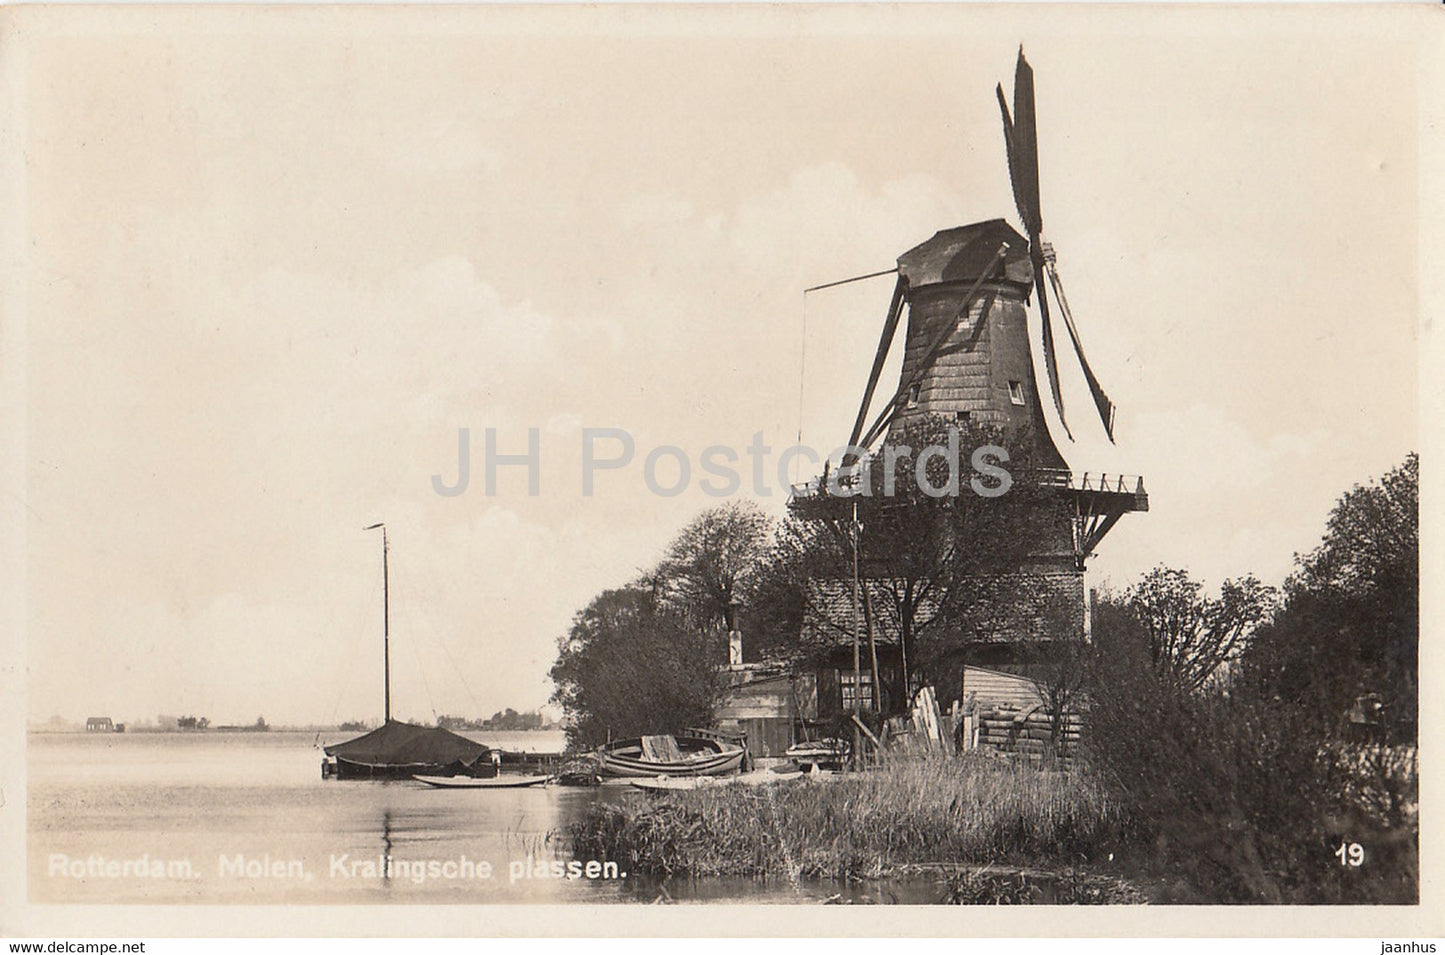 Rotterdam - Molen - Kralingsche plassen - windmill - 19 - old postcard - 1937 - Netherlands - used - JH Postcards